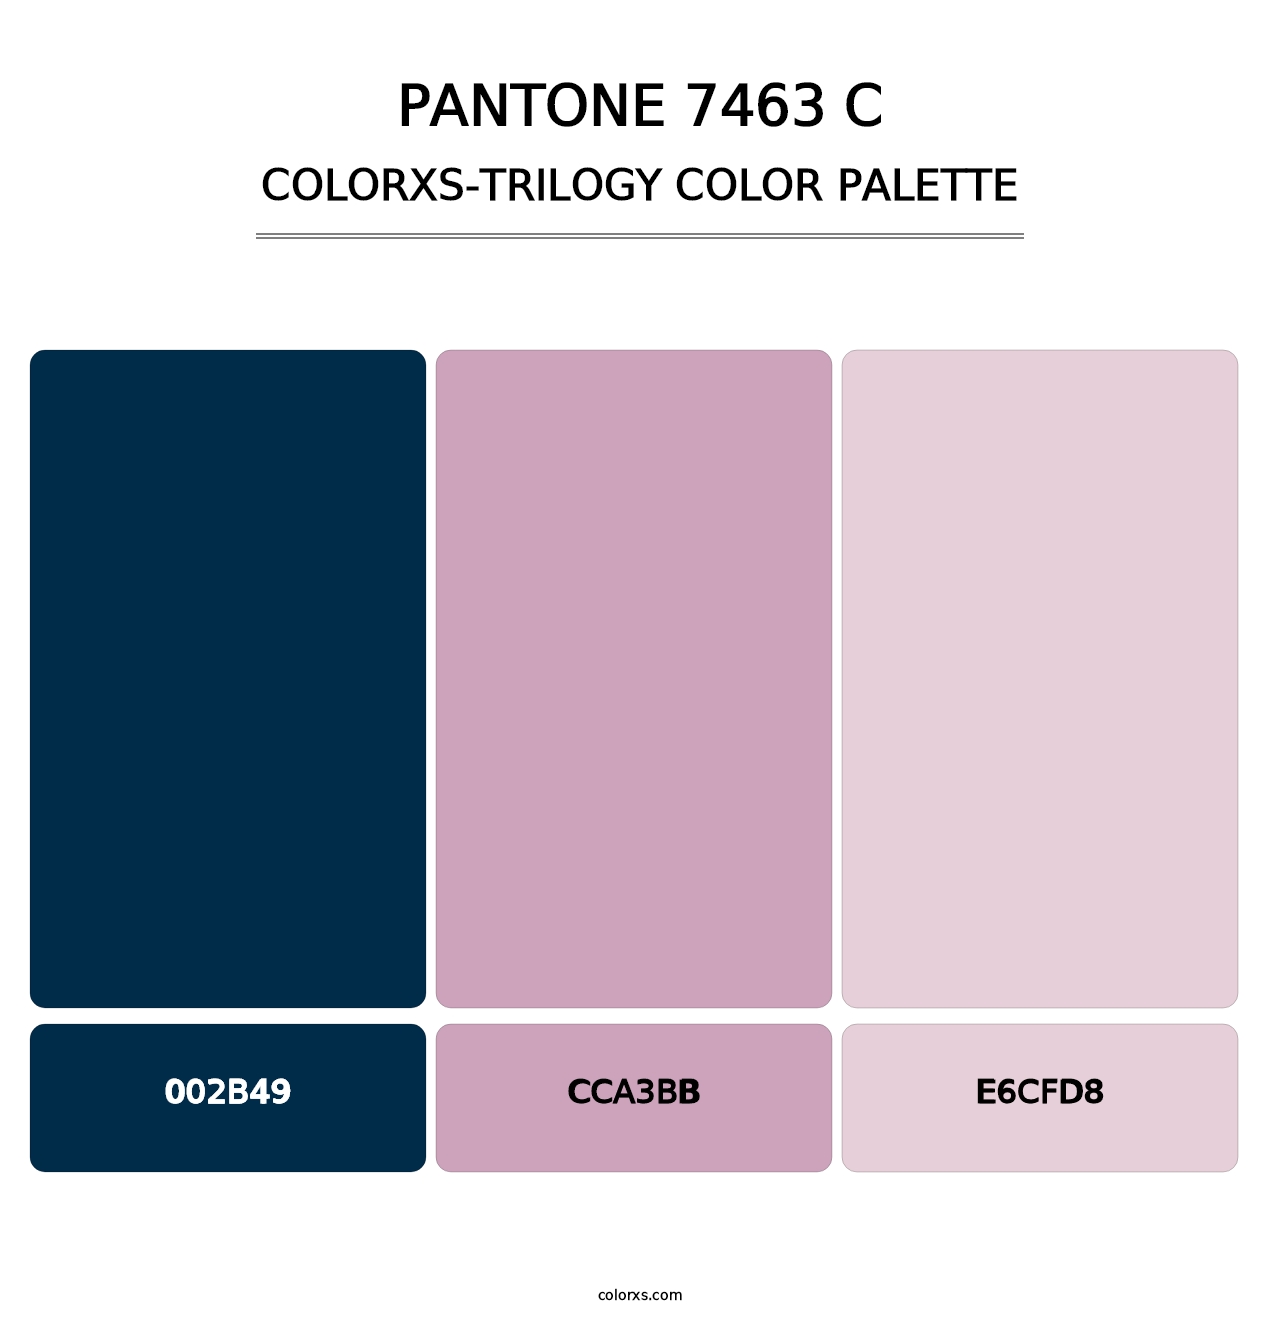 PANTONE 7463 C - Colorxs Trilogy Palette